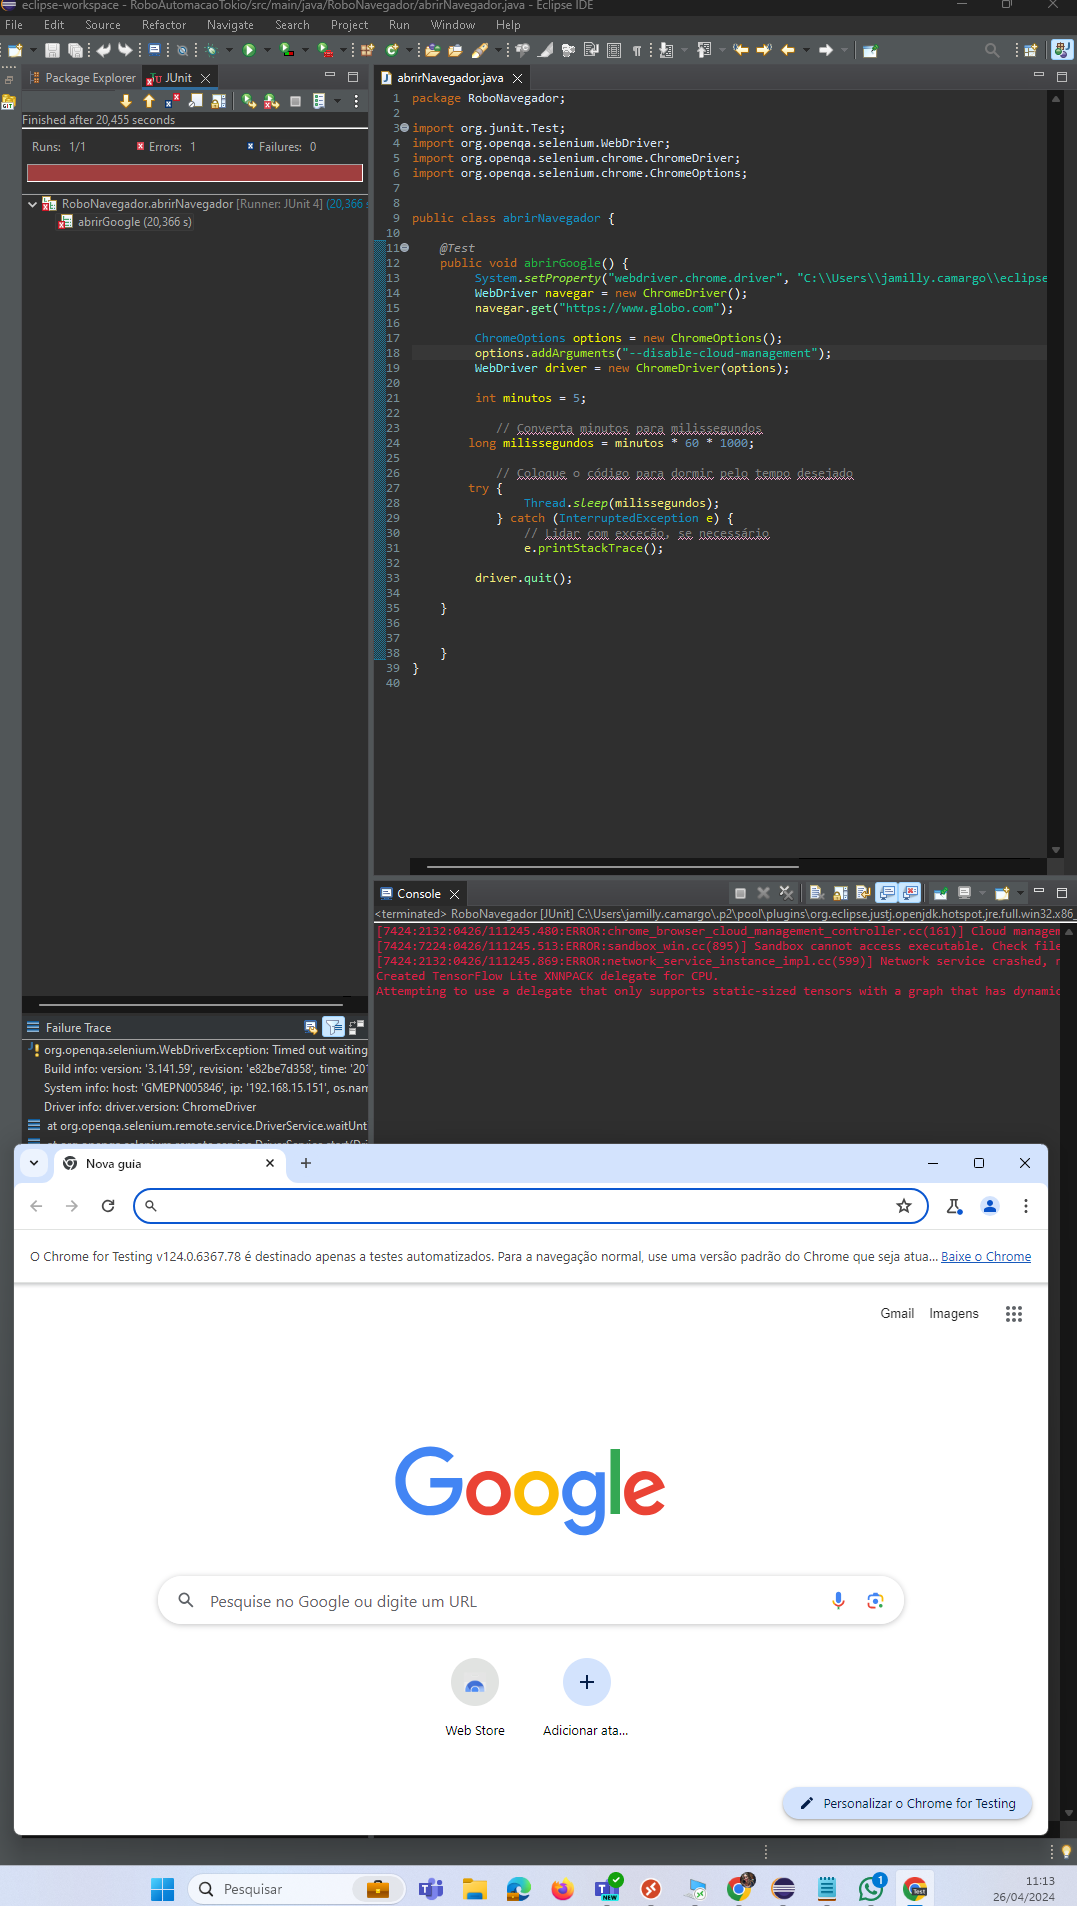 inseri o código e abru a pagina do google, mais não a pagina específica do teste